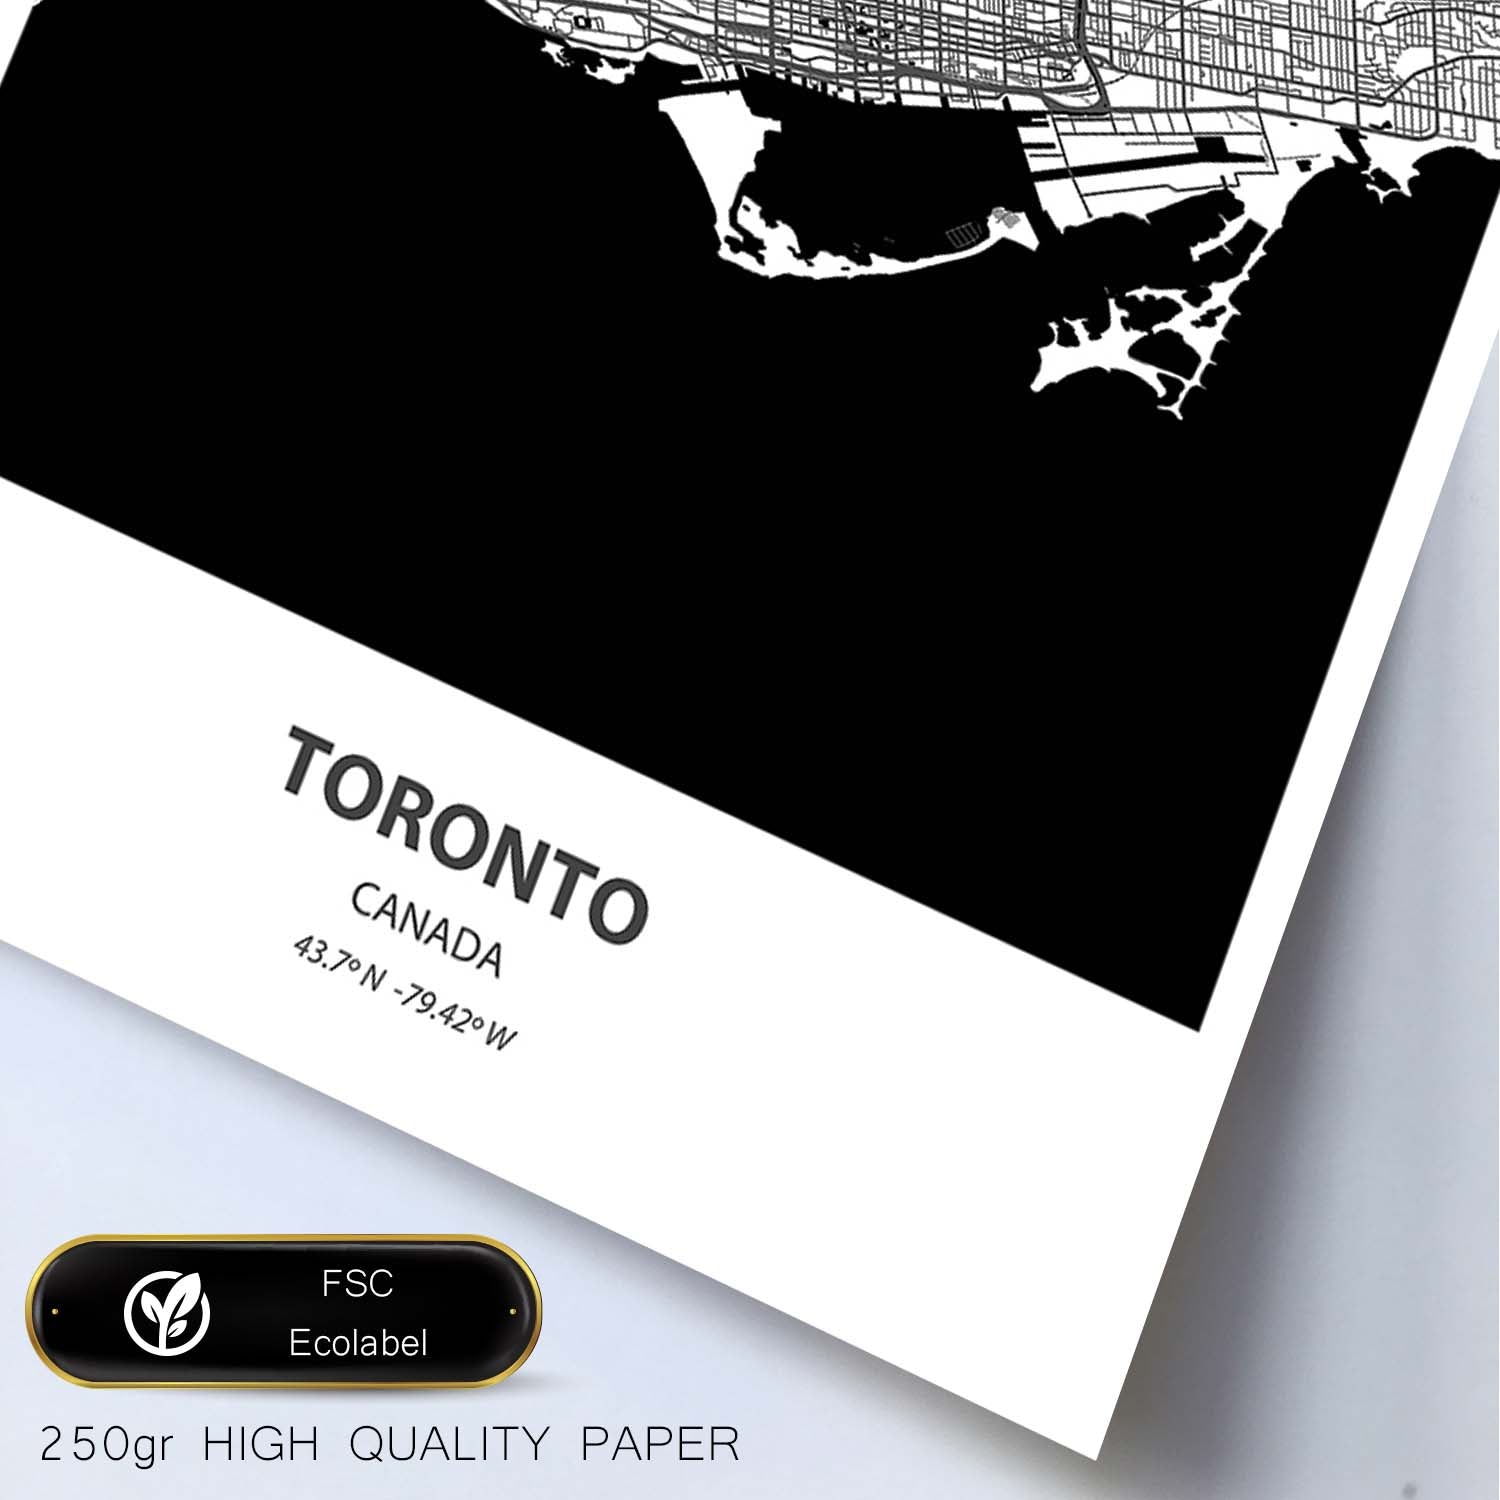 Poster con mapa de Toronto - Canada. Láminas de ciudades de Canada con mares y ríos en color negro.-Artwork-Nacnic-Nacnic Estudio SL